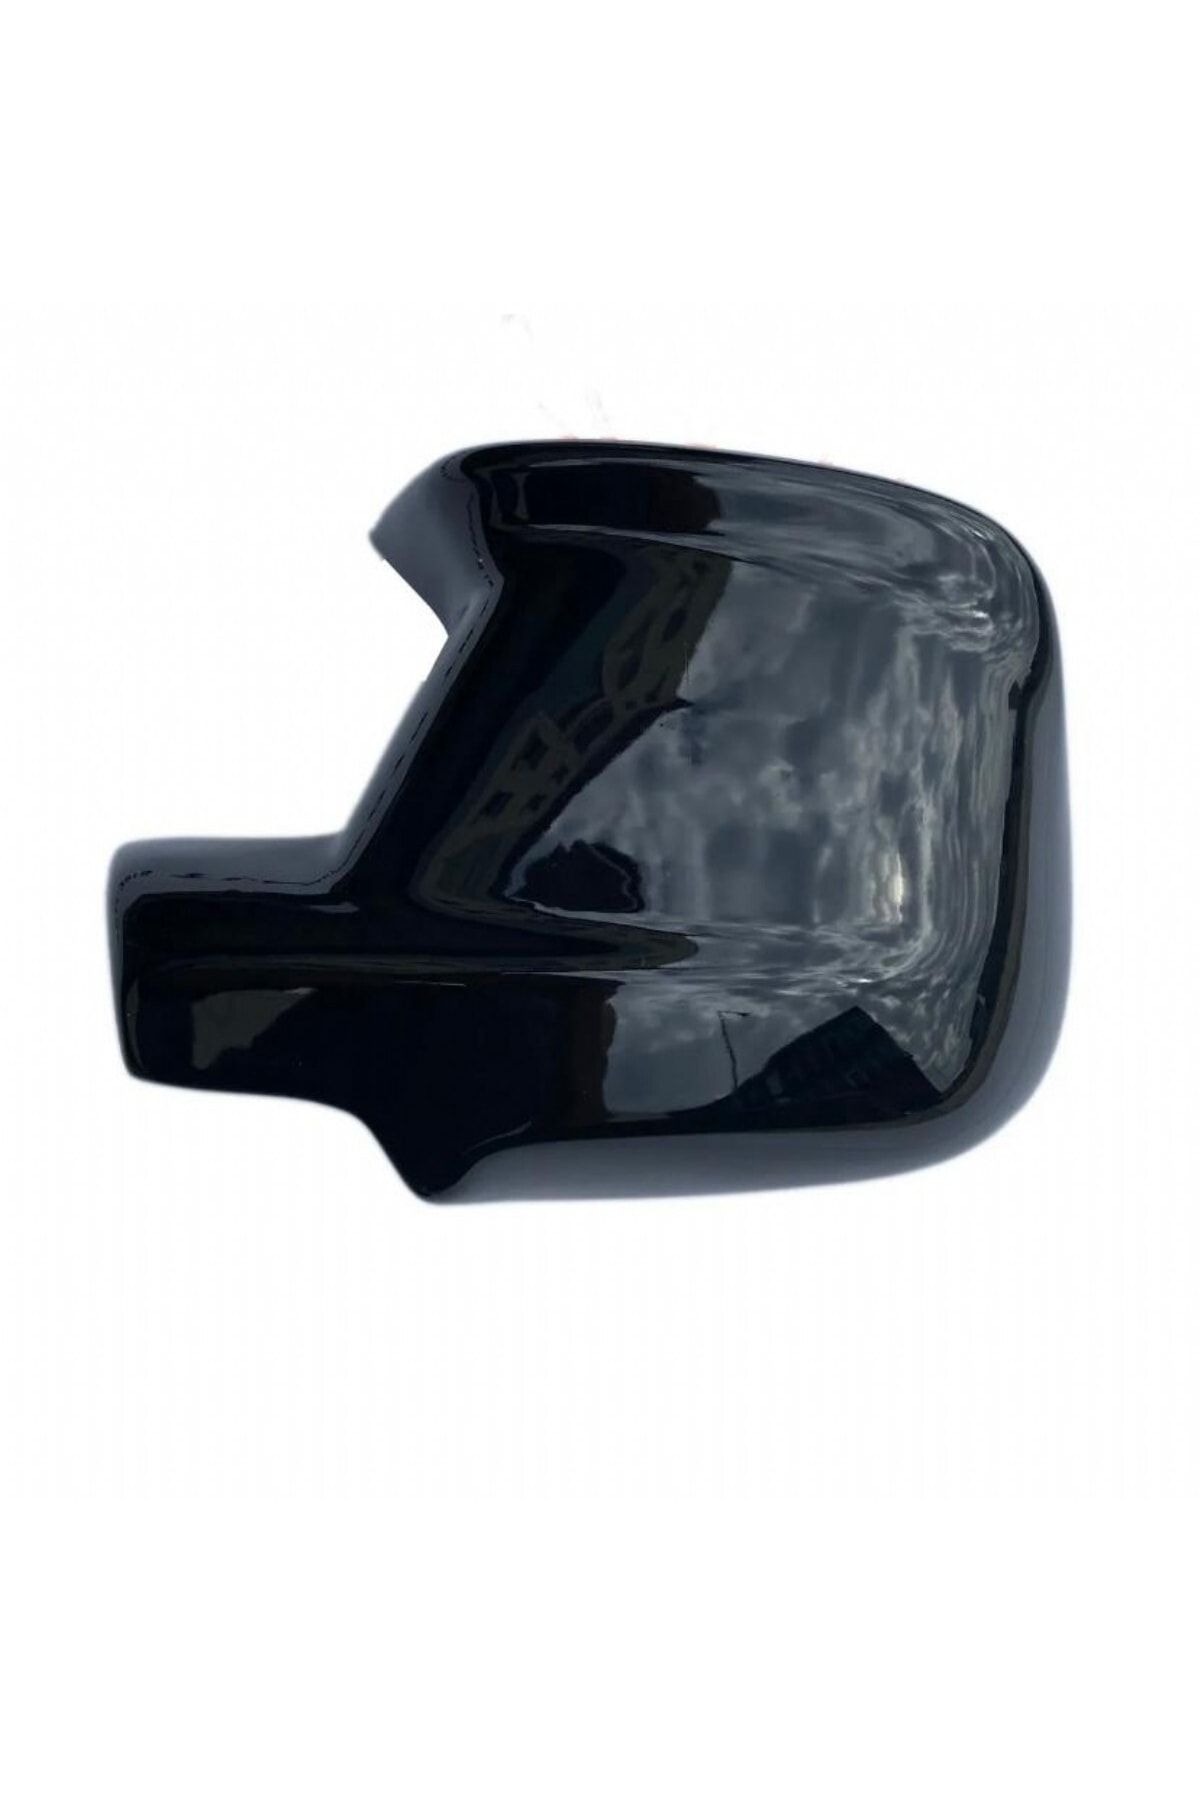 Batman Peugeot Partner Tepee 2015-2022 Plastik Yarasa Ayna Kapağı